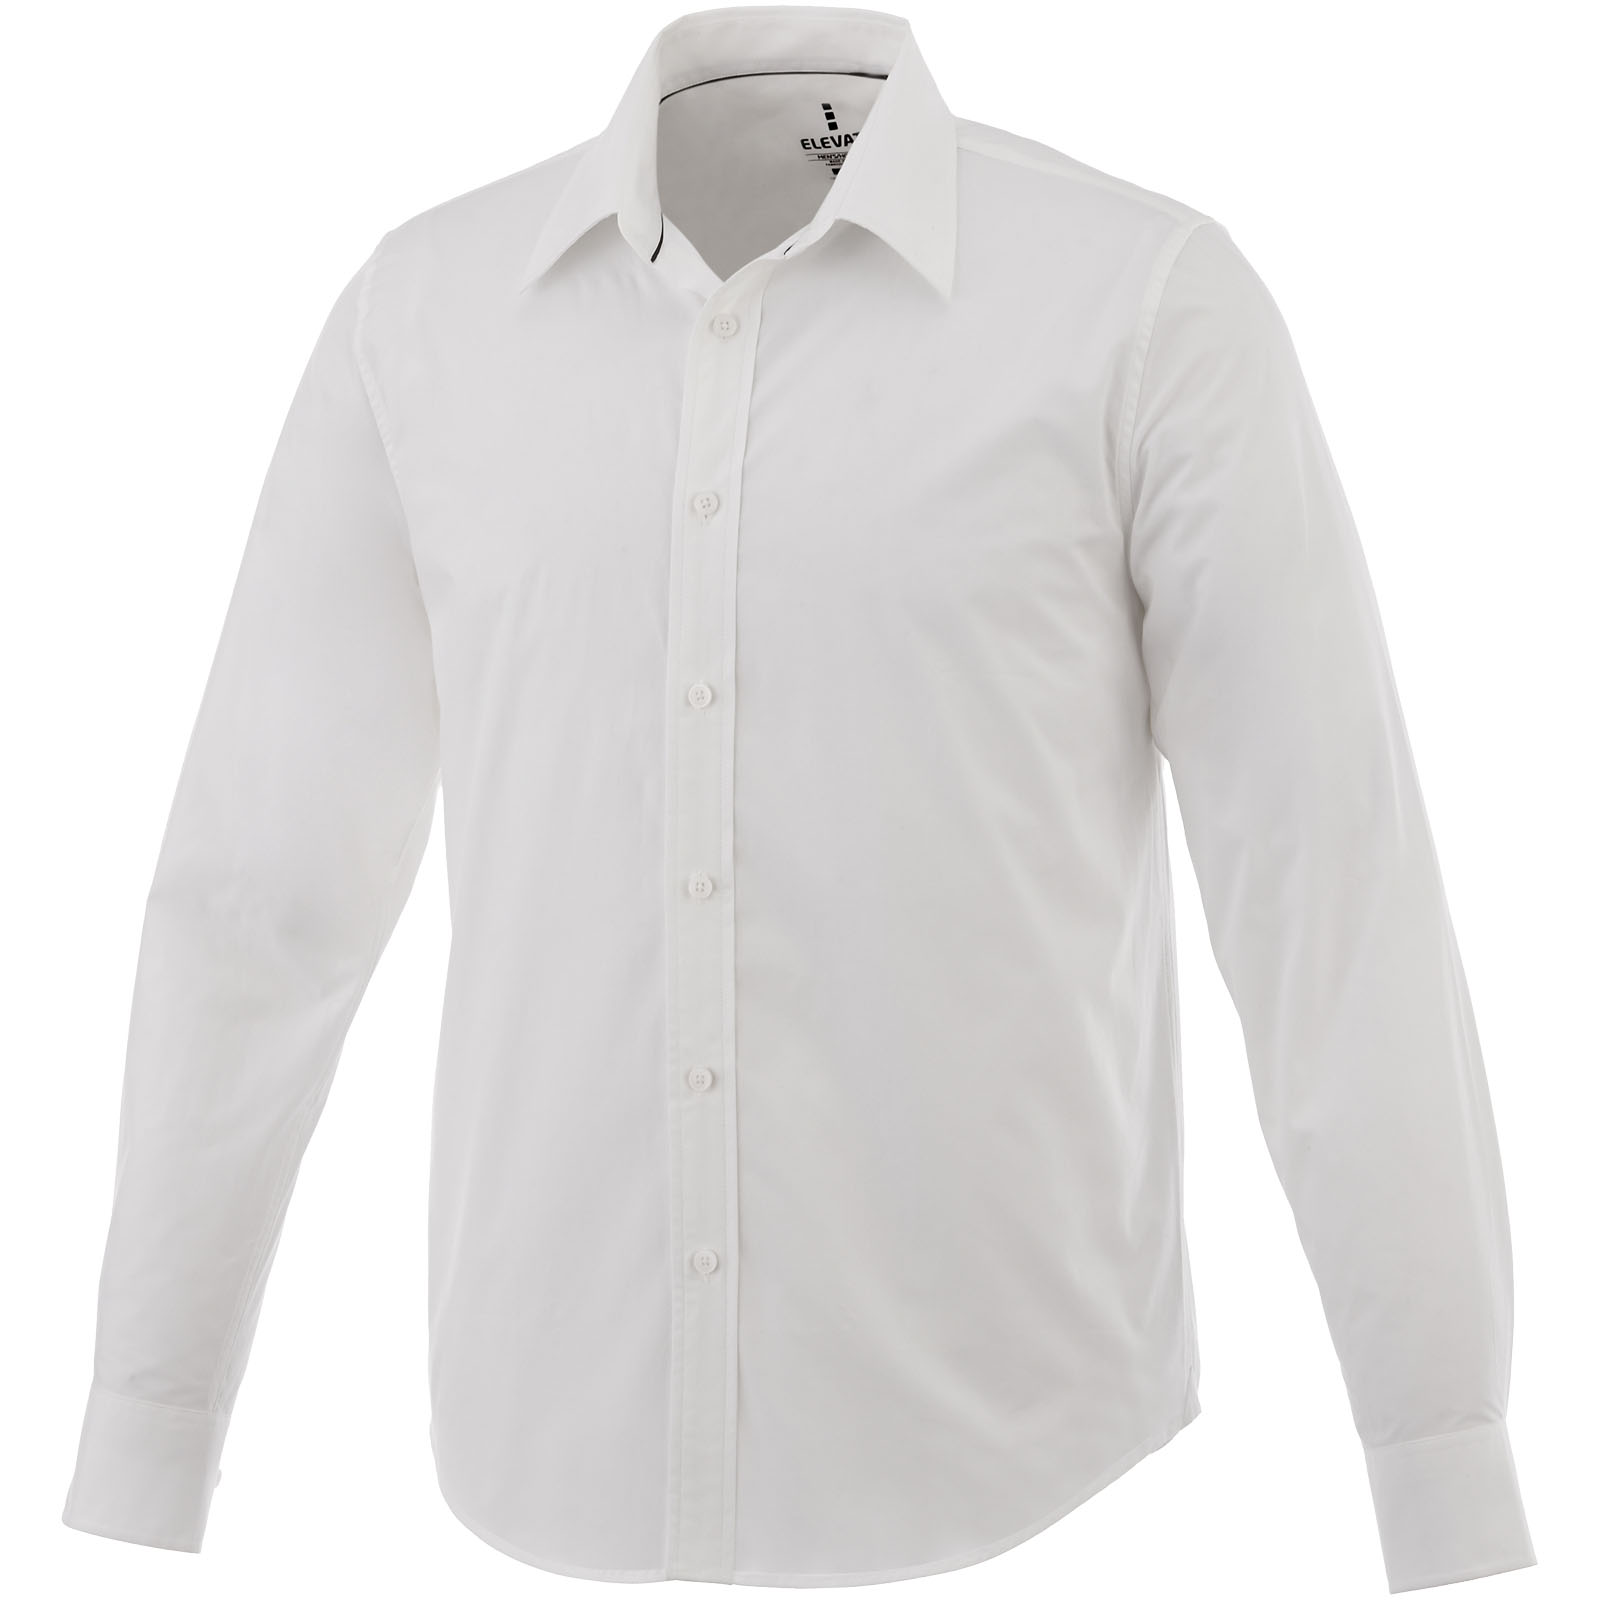 Shirts - Hamell long sleeve men's shirt